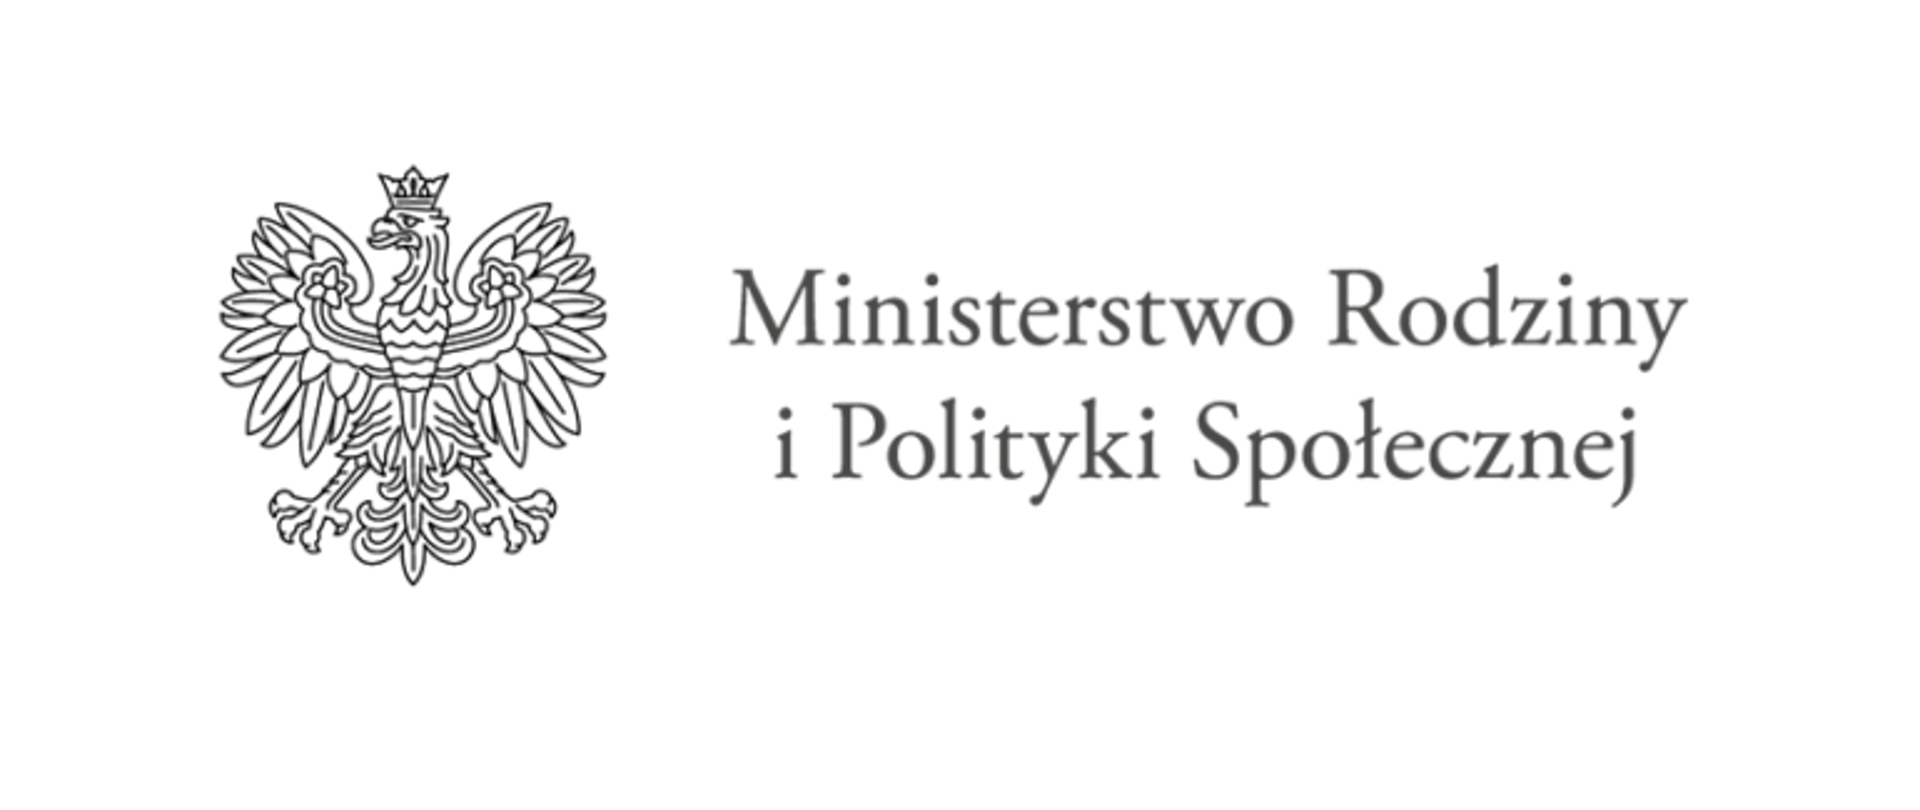 Napis Ministerstwo Rodziny i Polityki Społecznej na białym tle. Po prawej stronie symbol orła